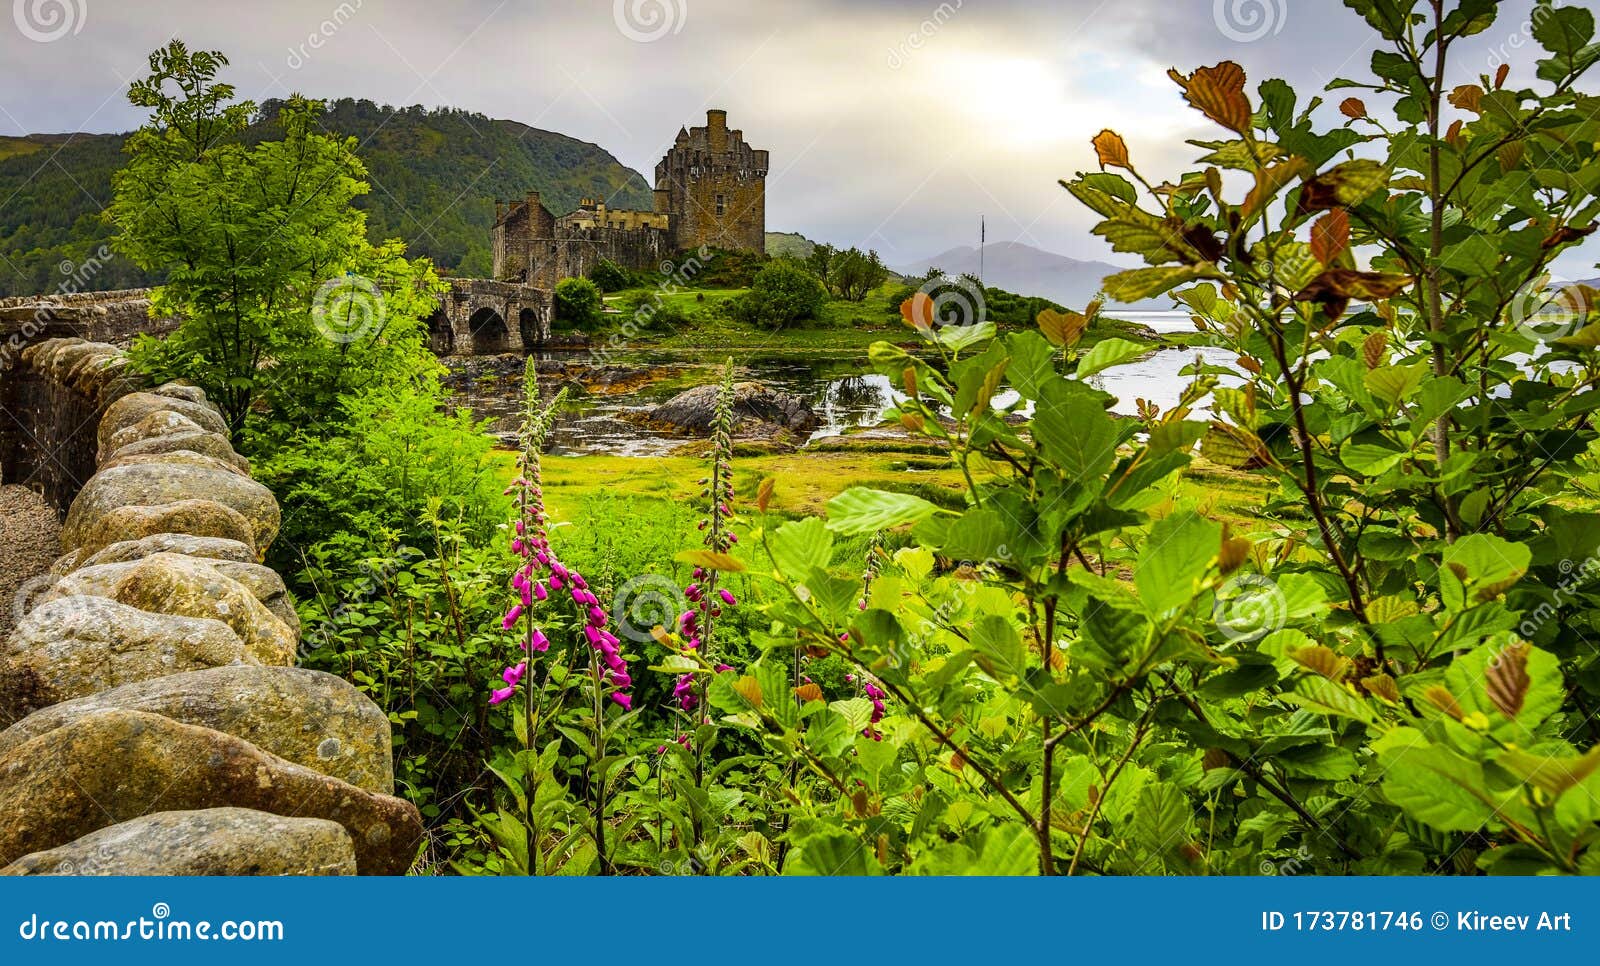 Selvforkælelse Blind skolde Ancient Scottish Medieval Buildings and Beautiful Landscape of Traditional  Nature. Stock Photo - Image of fantastic, british: 173781746